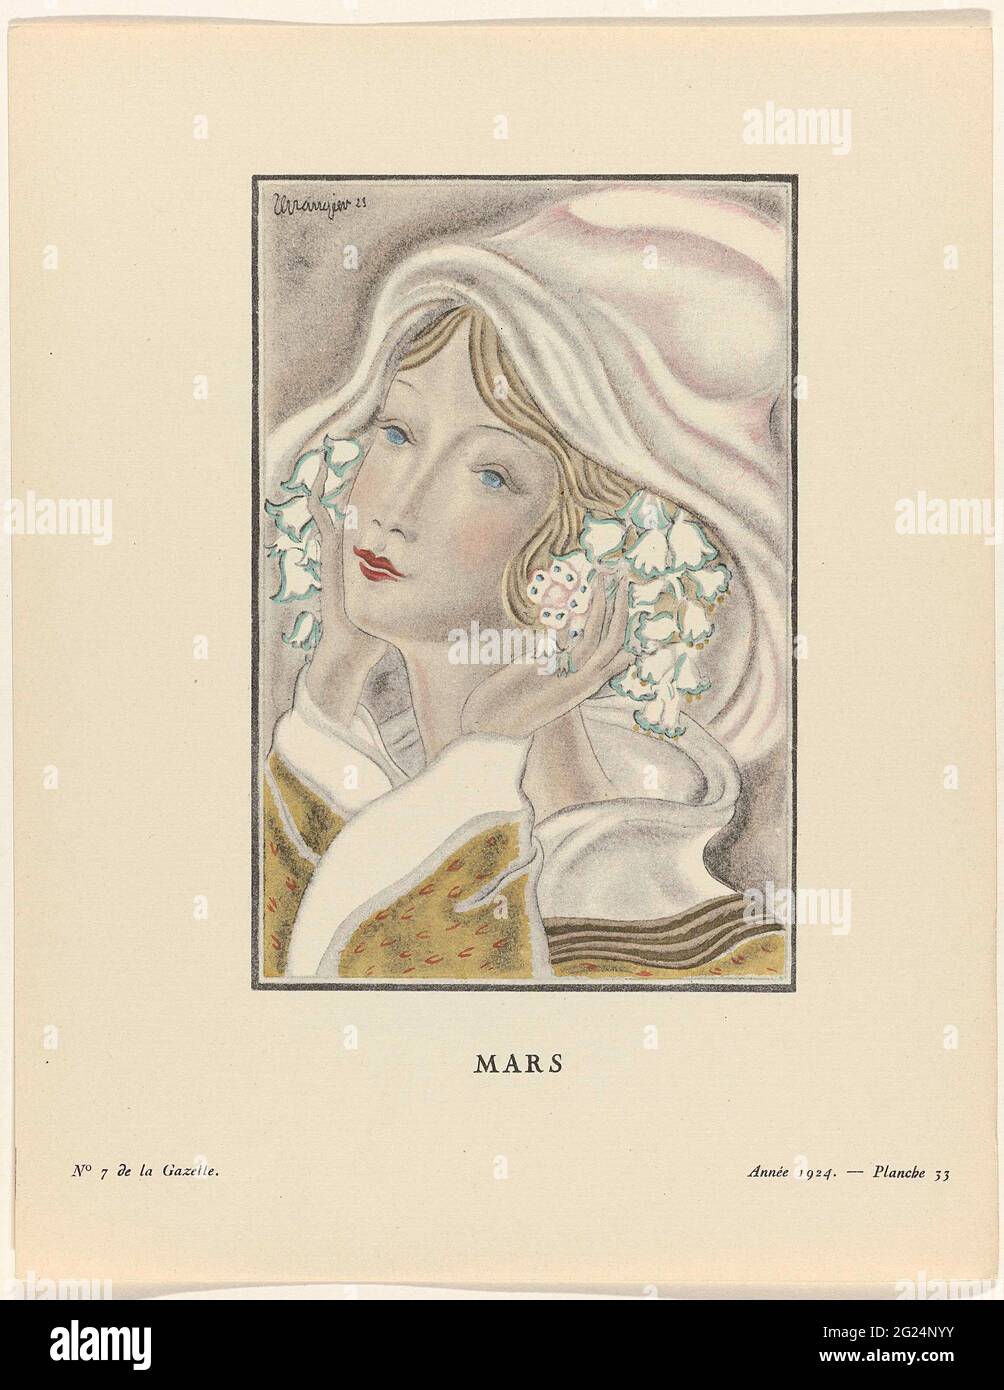 Gazette du bon tonnes. Art - modes et Frivolés, 1924 - N° 7 : Mars.  Portrait d'une femme avec les mains aux oreilles et les fleurs dans les  cheveux. Planche 33 de